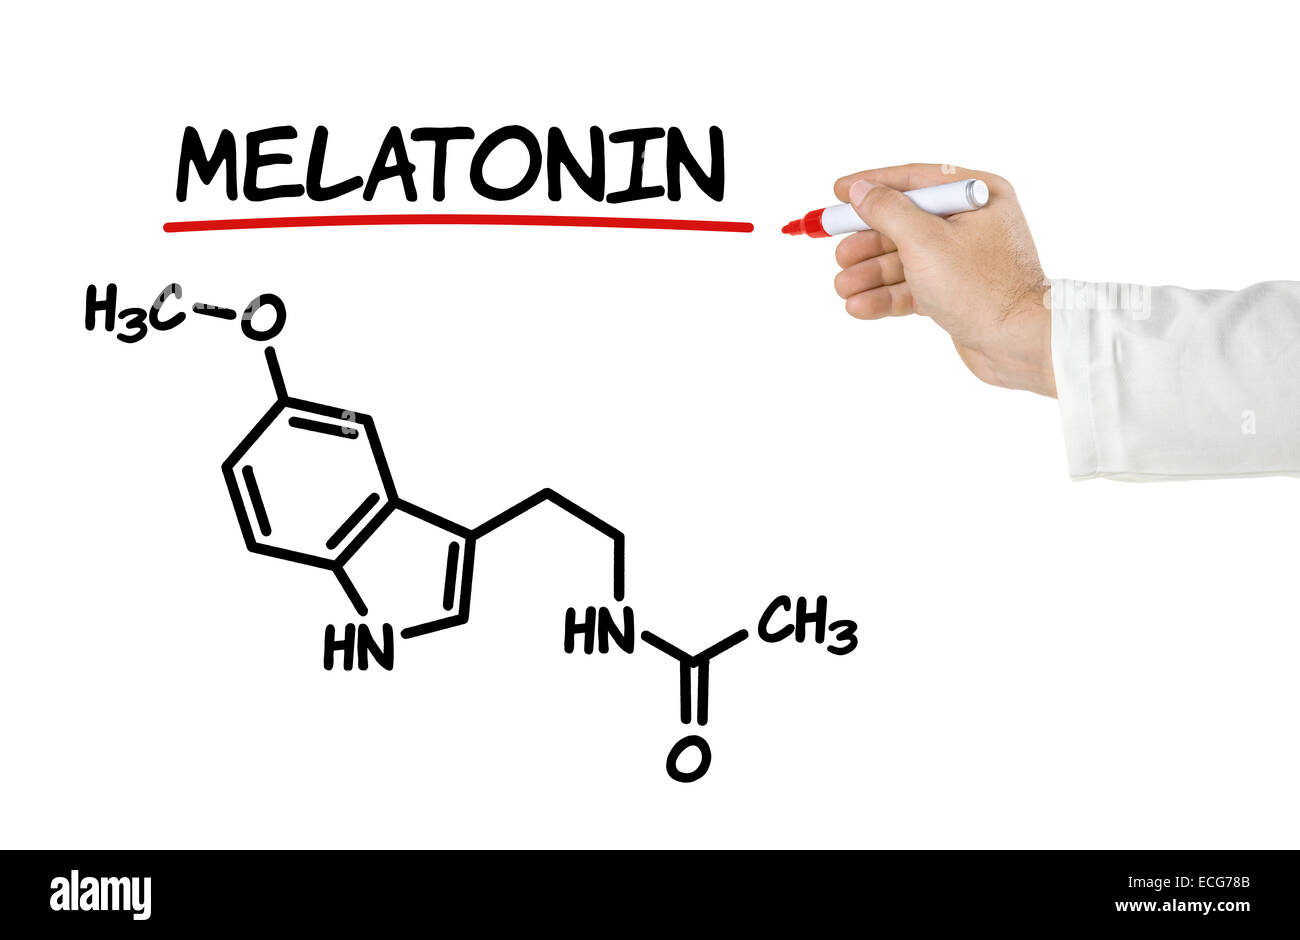 Chemical formula of melatonin on a white background Stock Photo